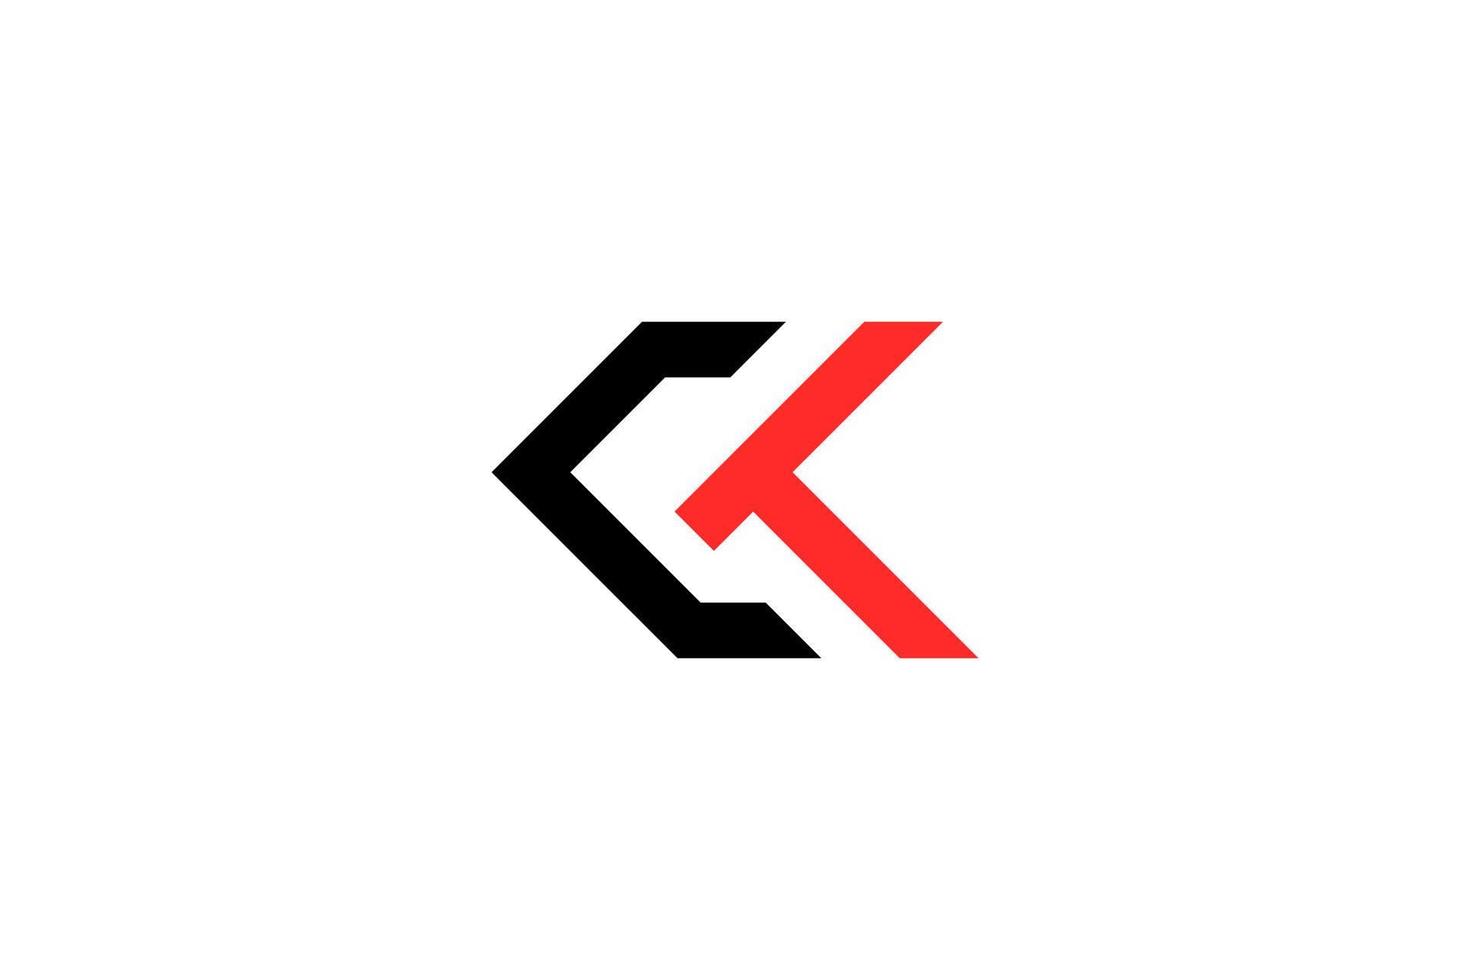 modelo de vetor de design de logotipo ck ck inicial